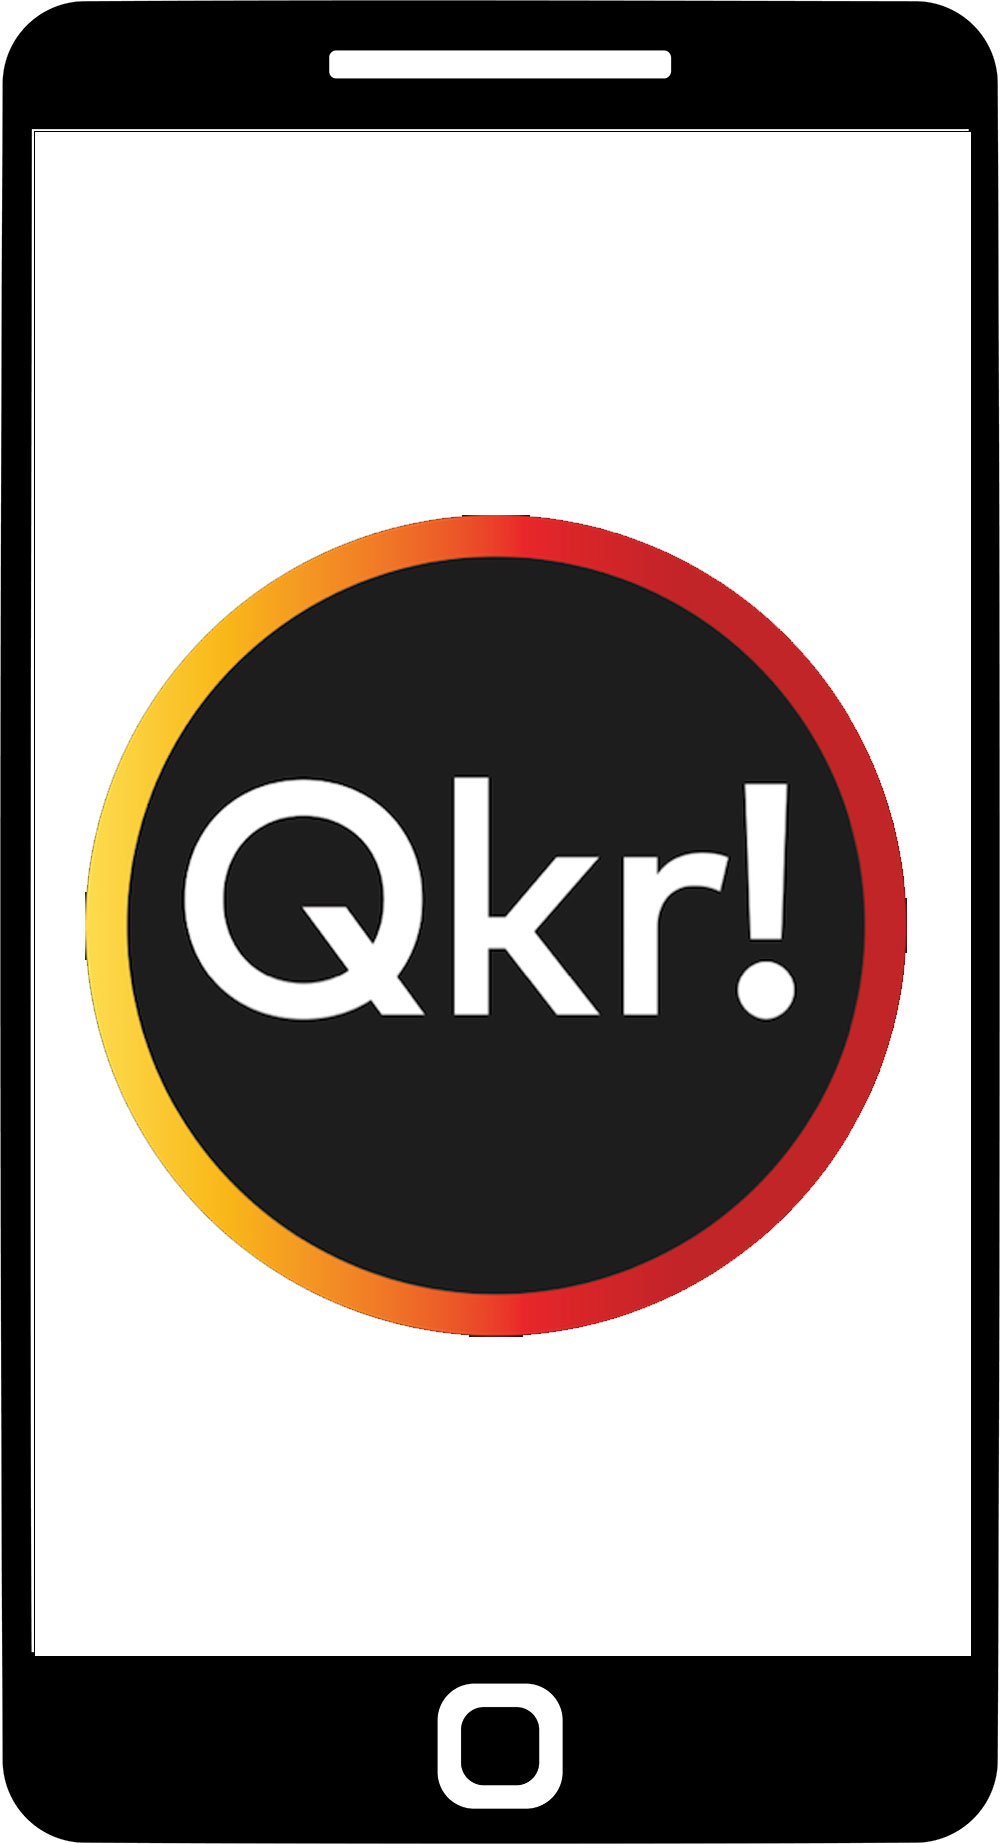 QKR logo on mobile screen.